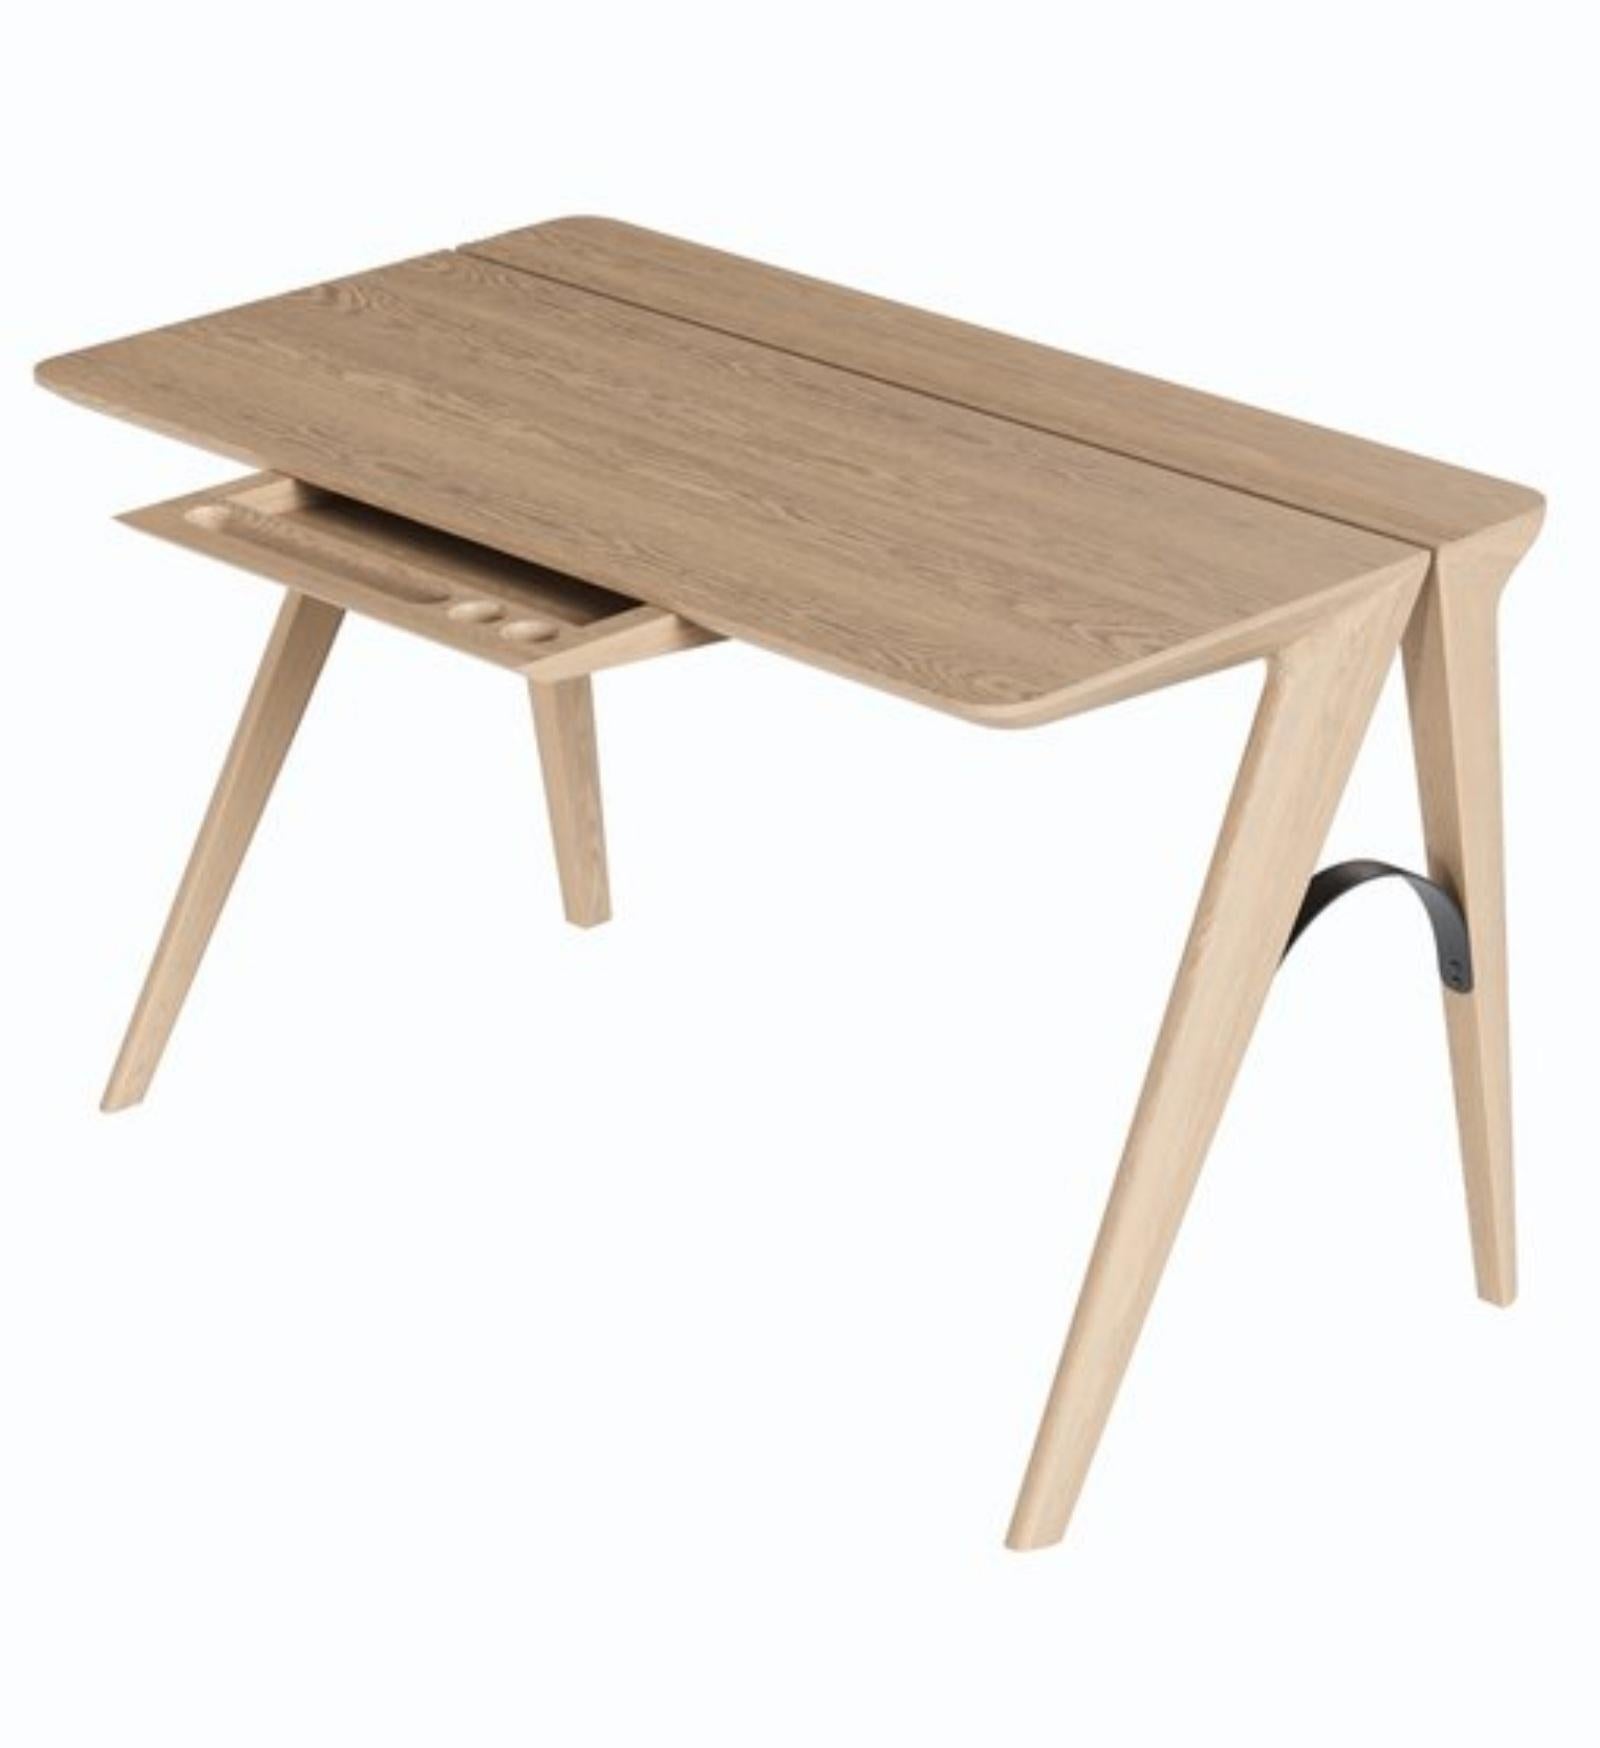 Scandinavian Modern Scandinavian Minimalist Style Wood Desk For Sale